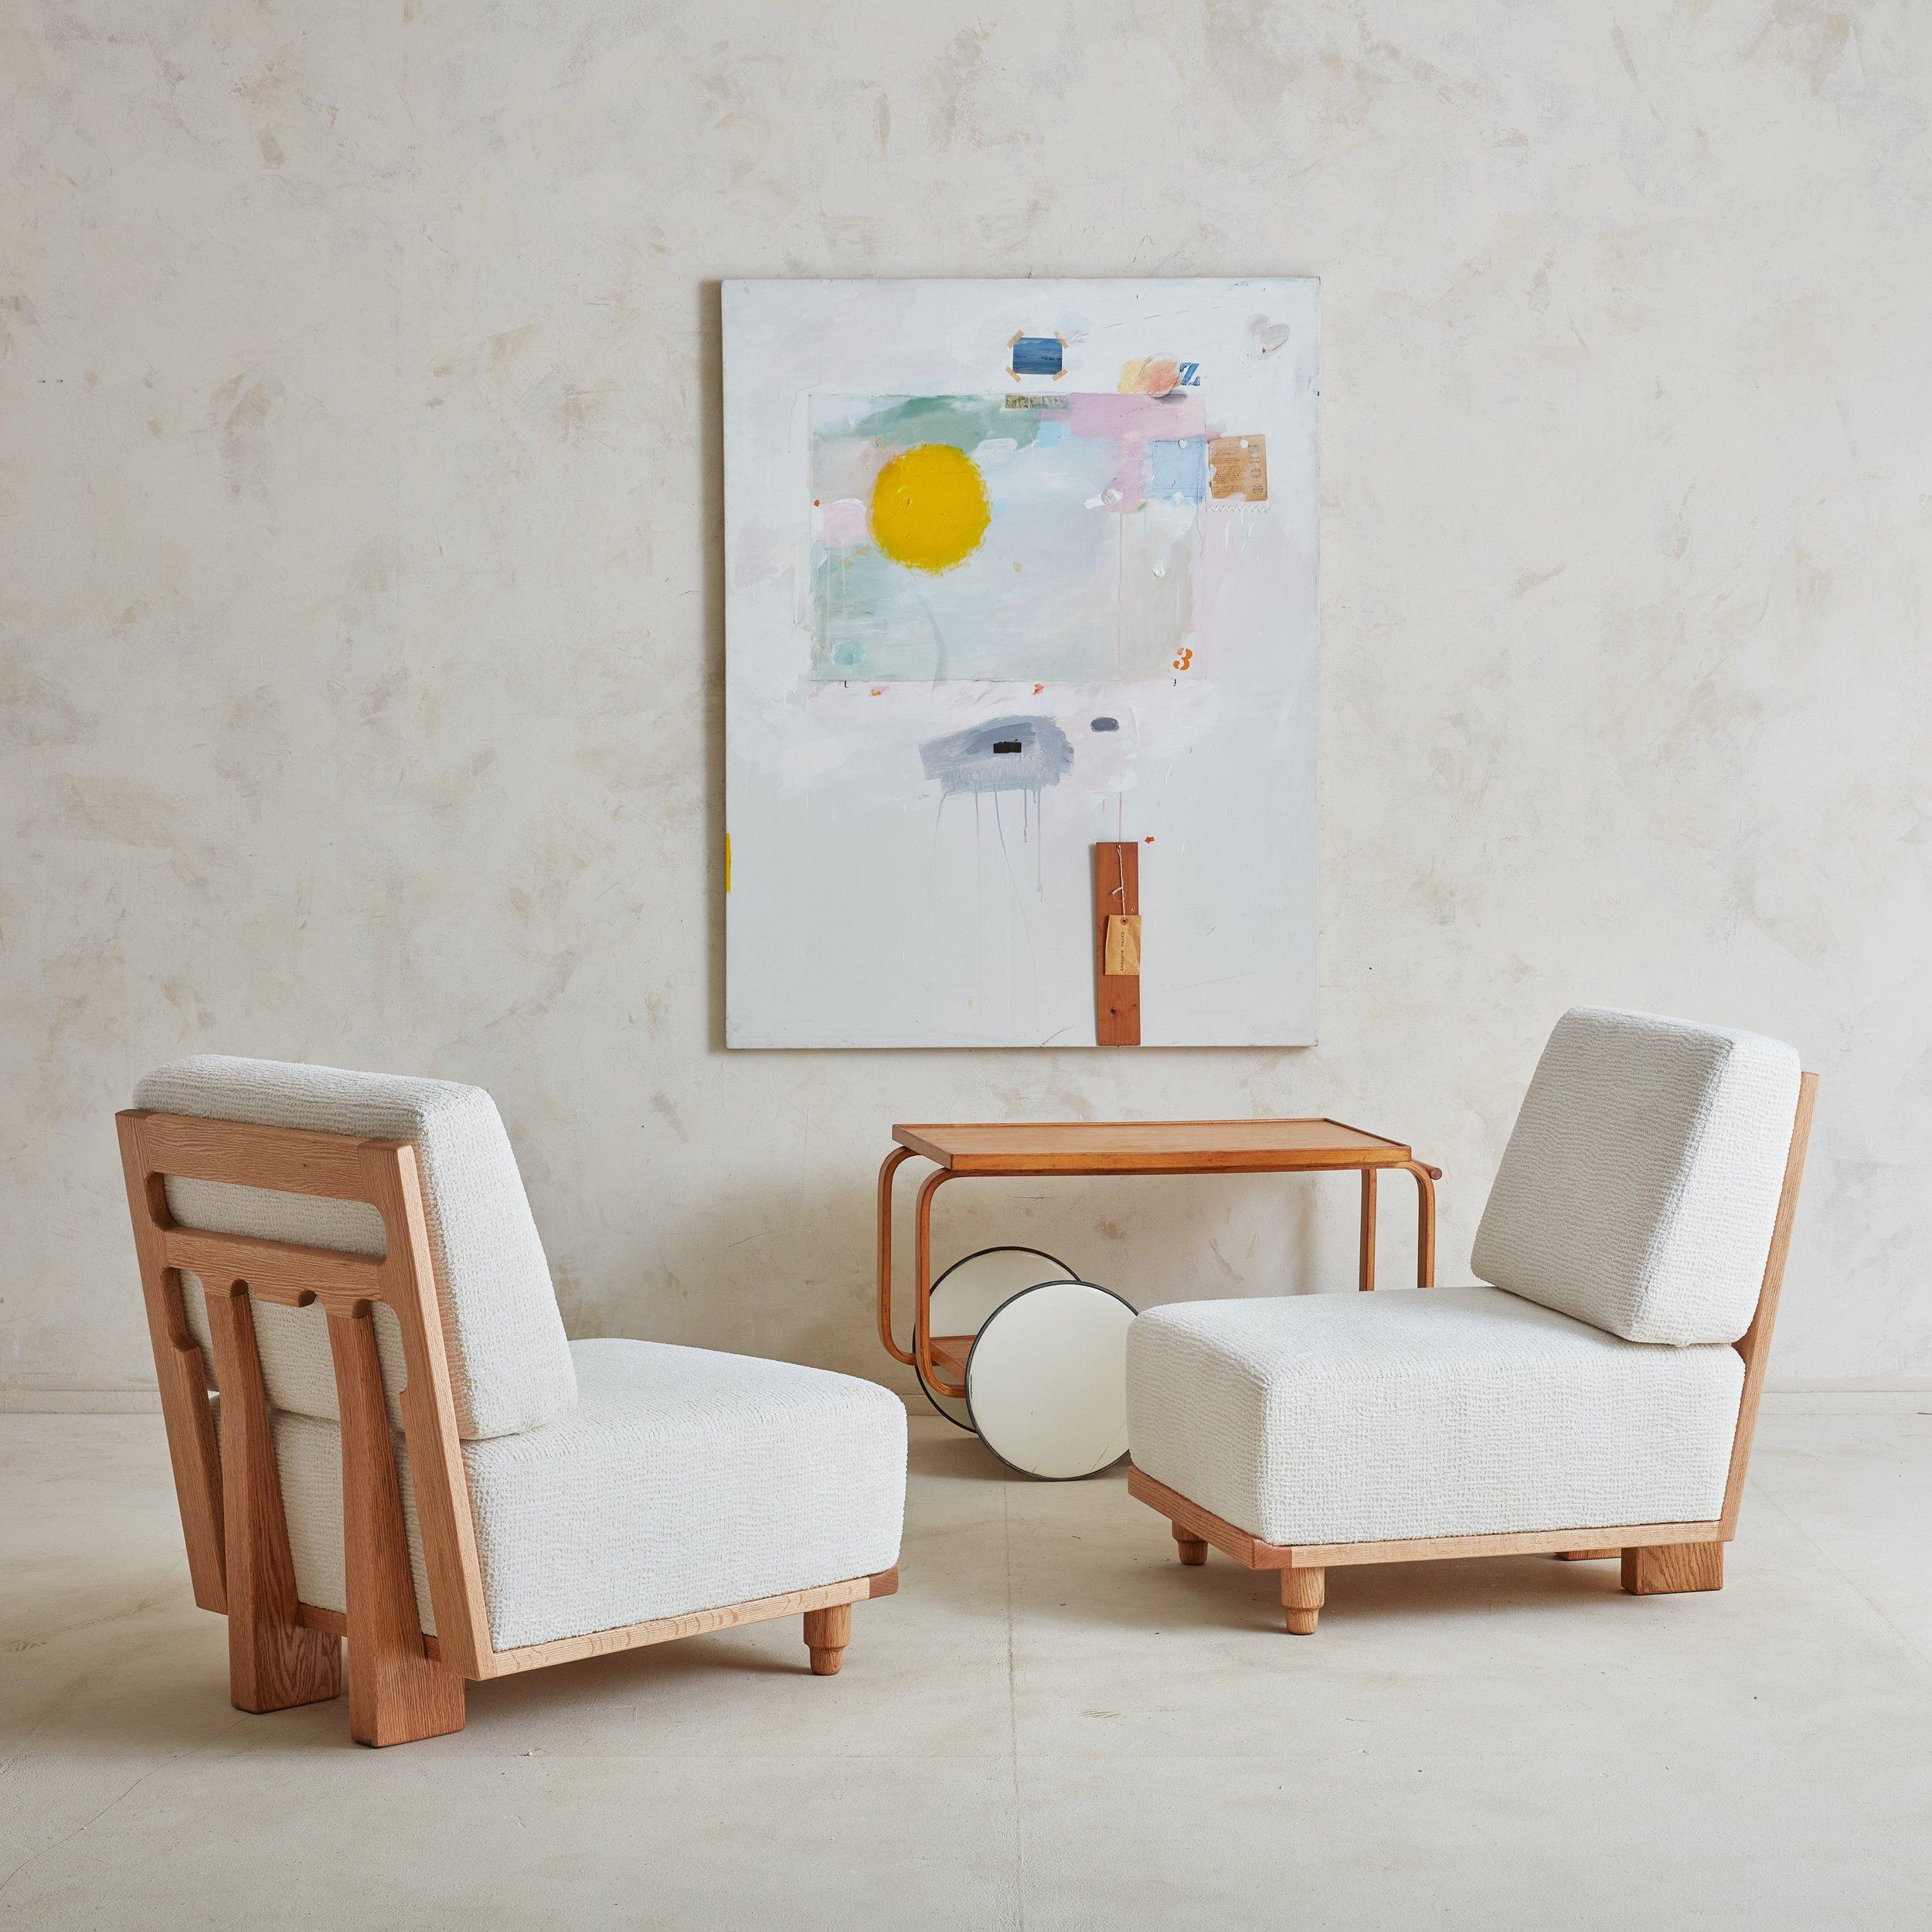 Chaise longue 'Elmyre' de Guillerme et Chambron. Ces chaises ont des cadres sculpturaux en chêne avec des détails découpés et s'assoient au ras du sol. Ils sont dotés d'épais coussins déhoussables nouvellement recouverts d'un magnifique tissu